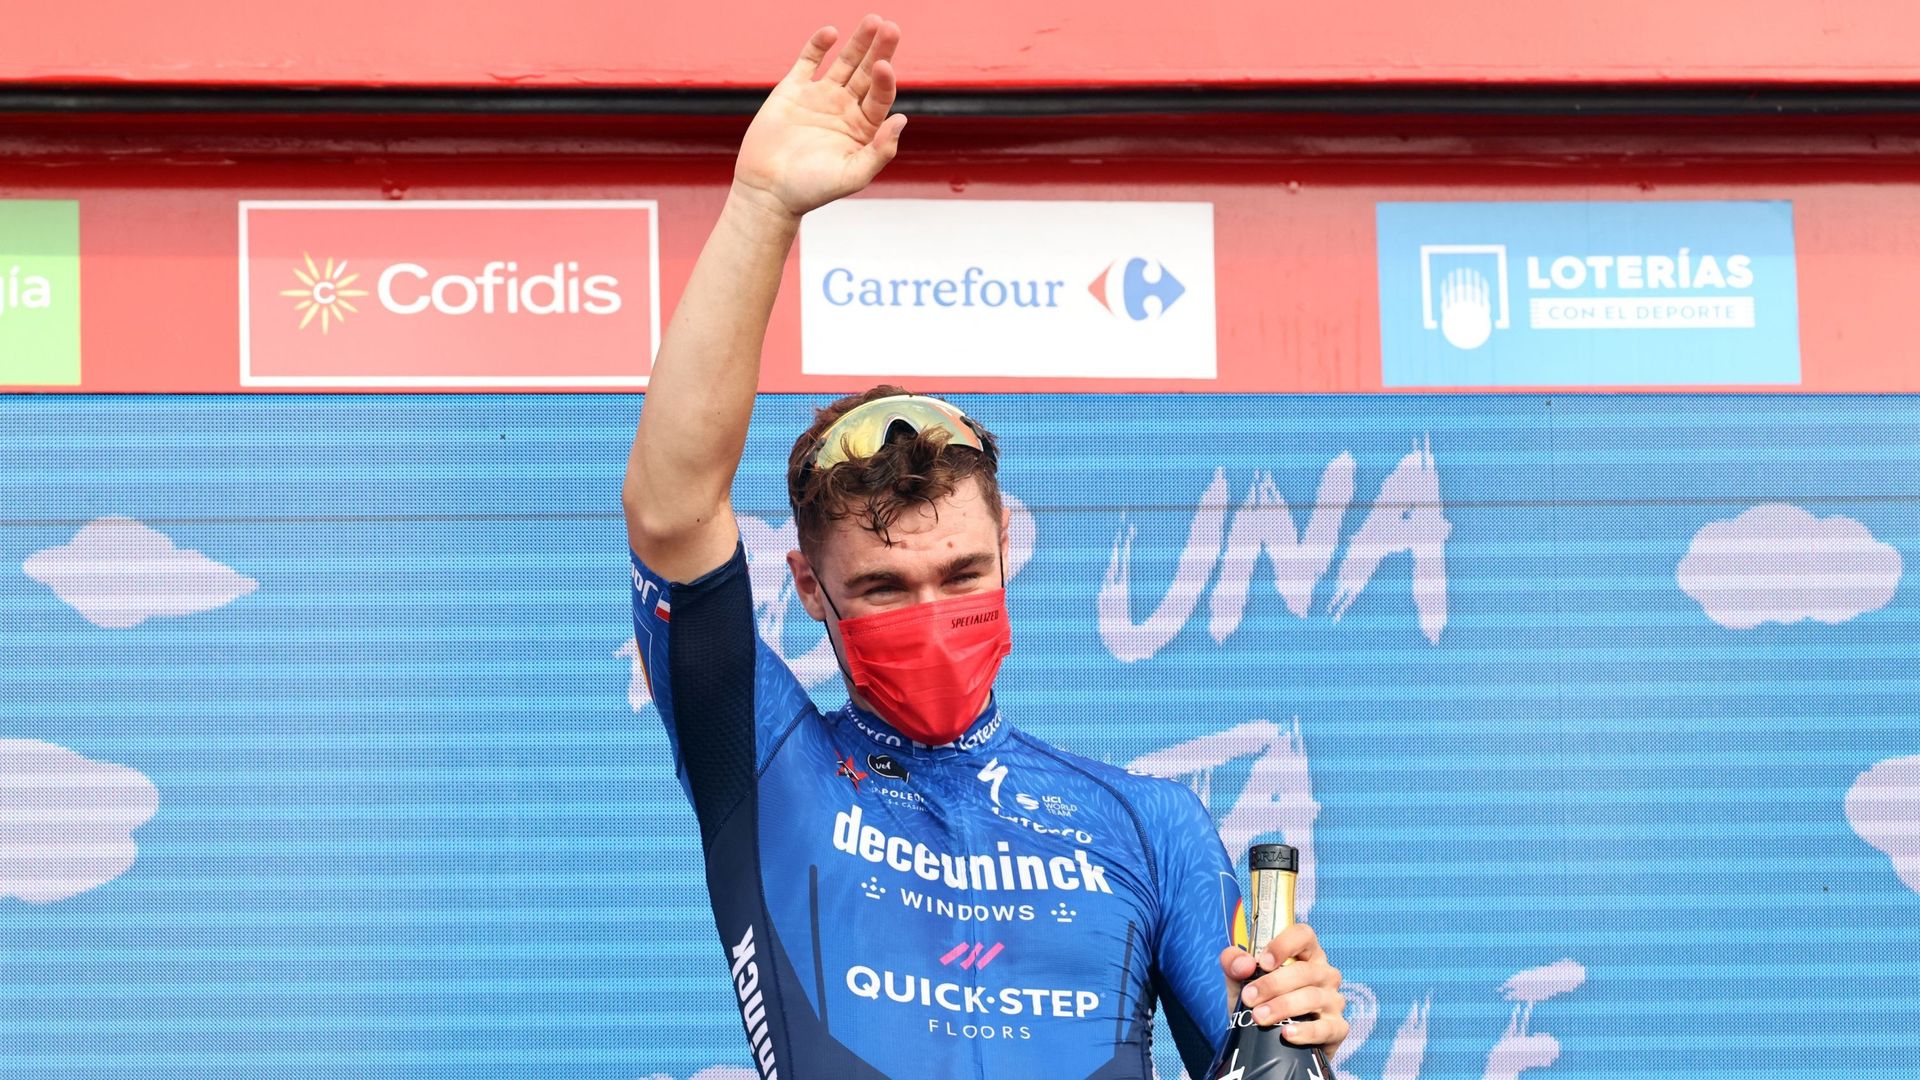 Le Néerlandais était ravi après sa victoire sur la Vuelta.